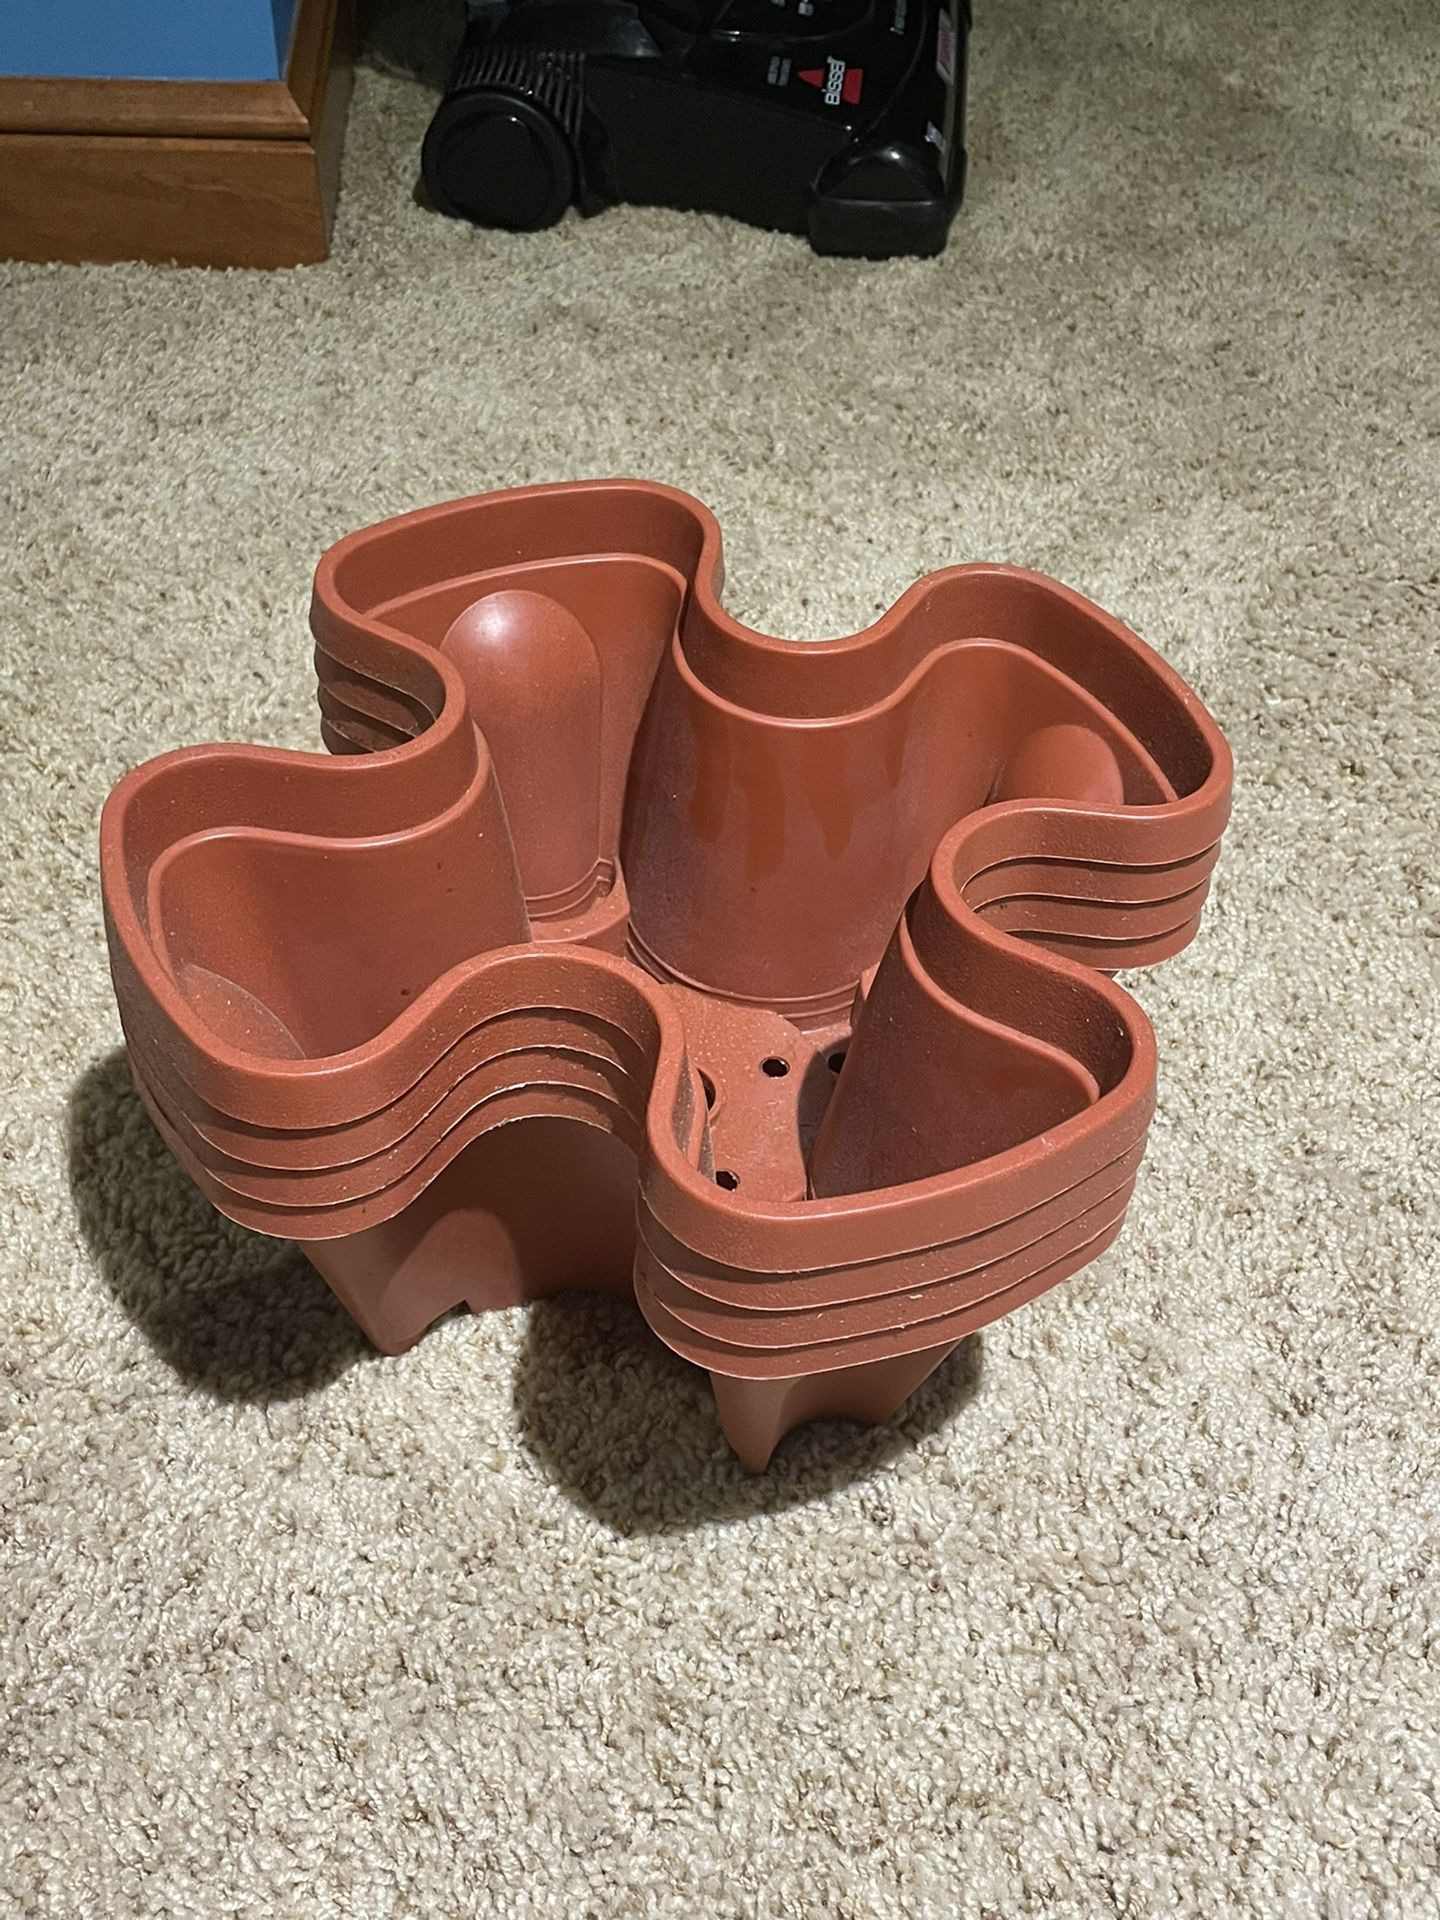 4 Plastic Flower Pots